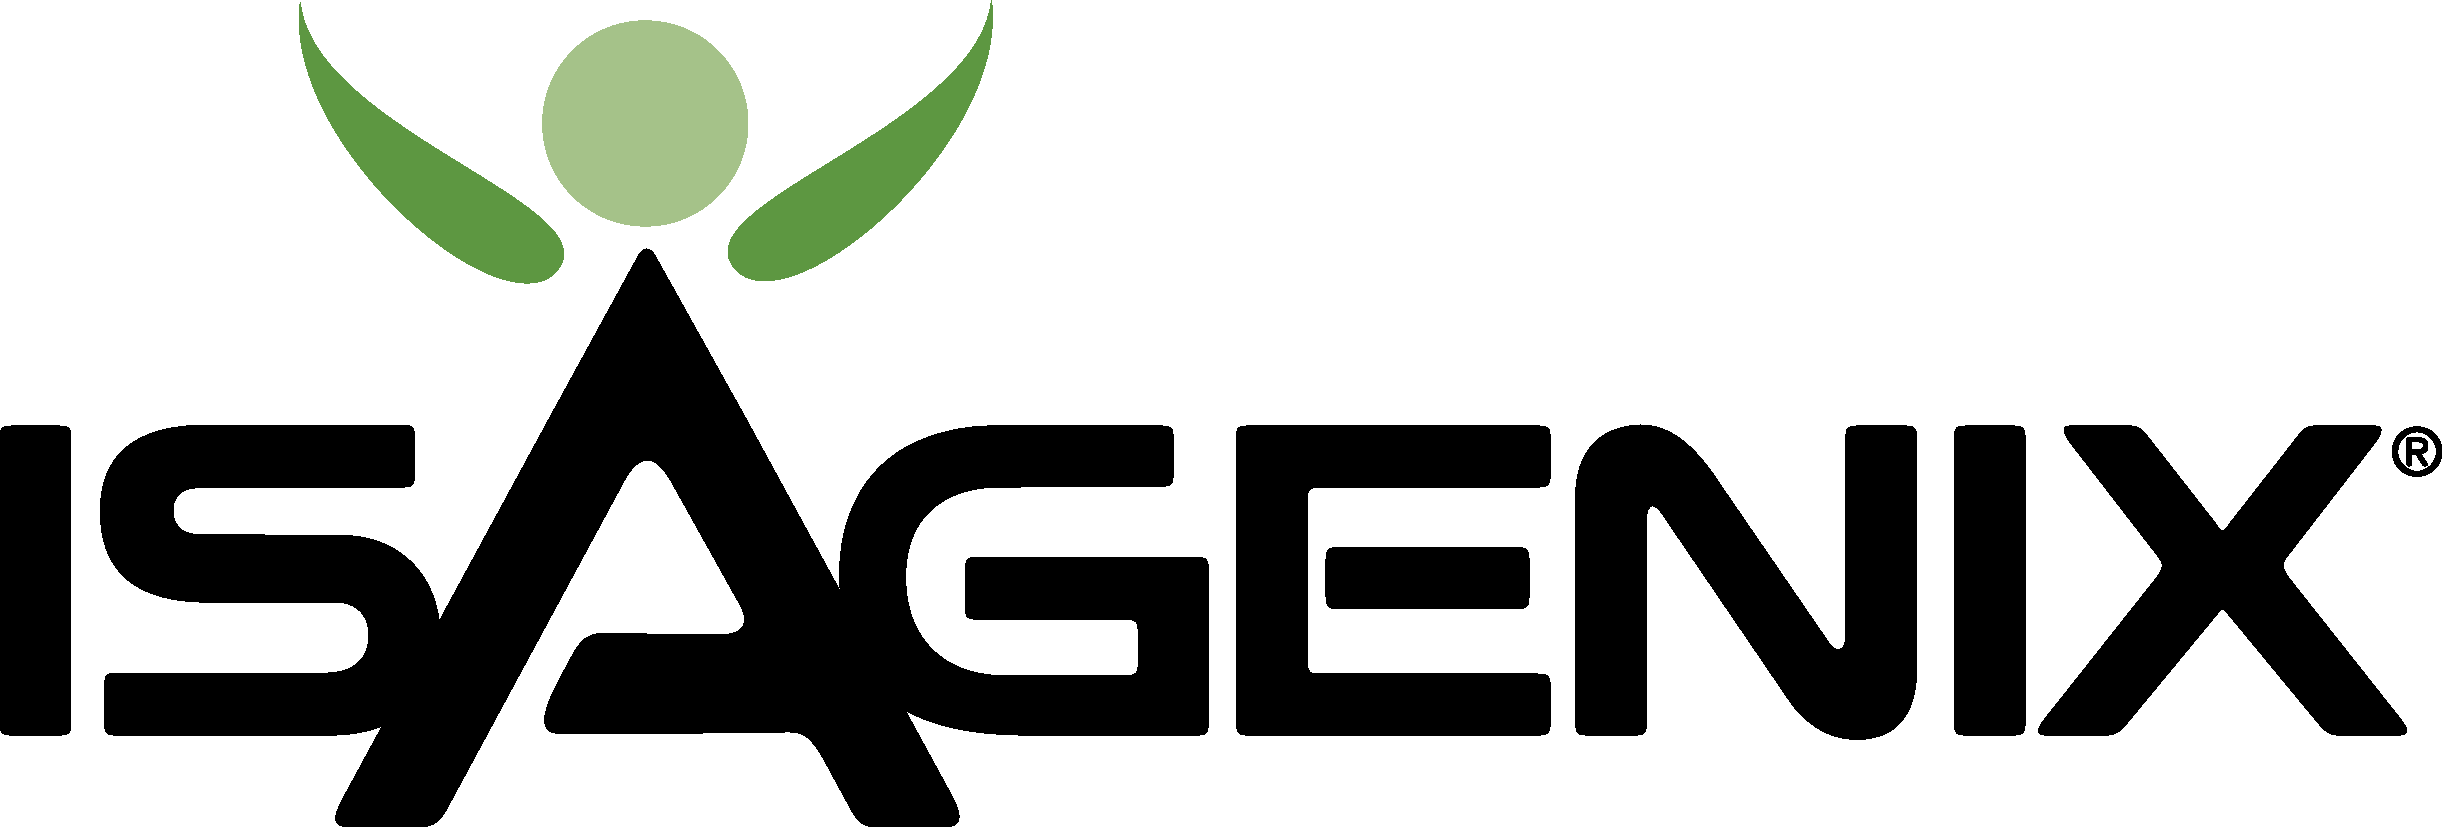 Isagenix logo png